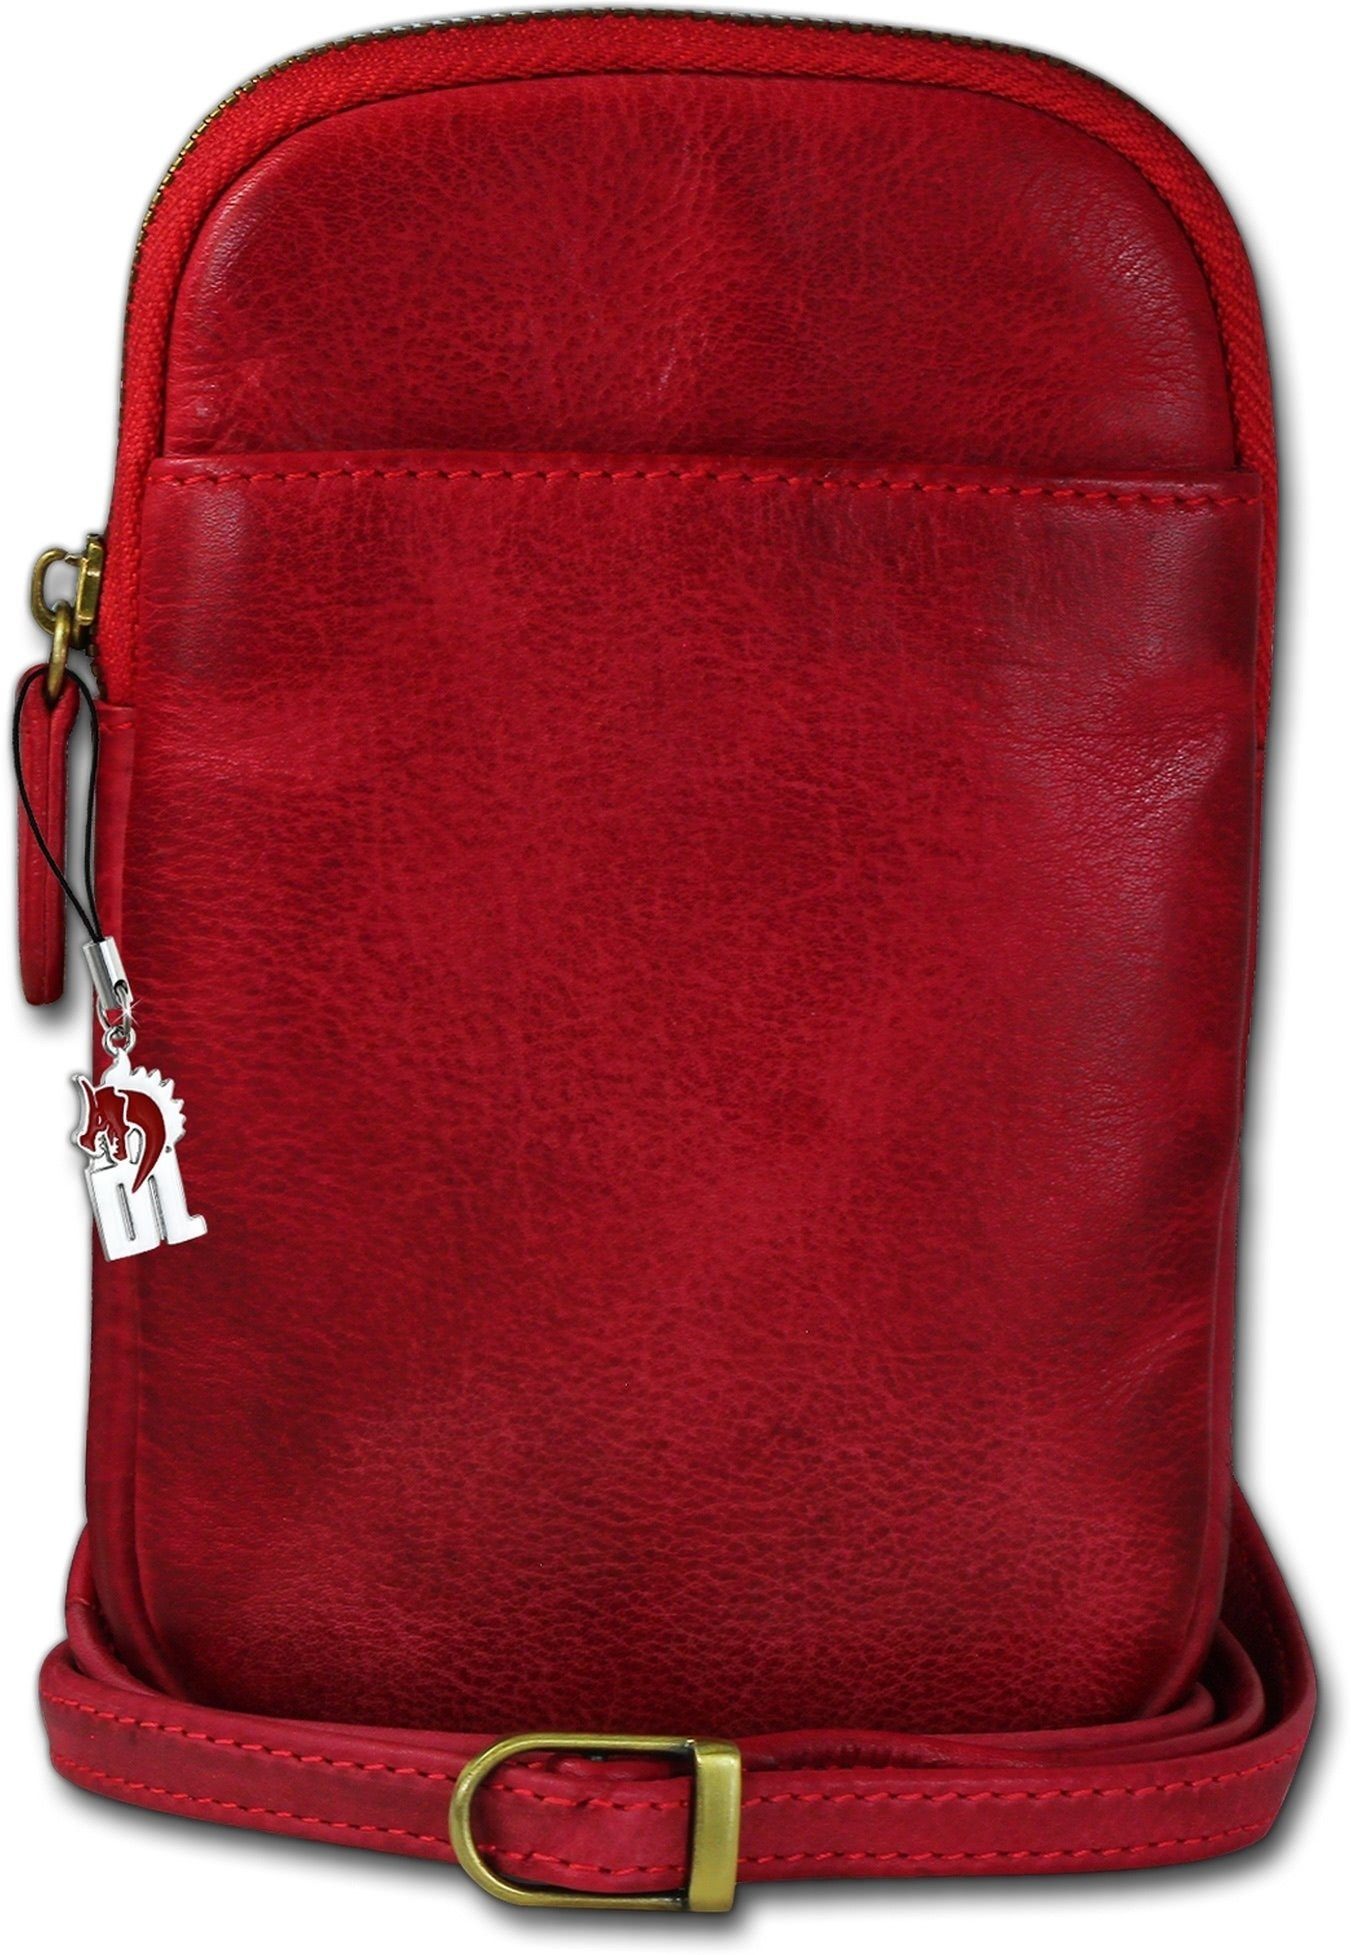 Echtleder Handtasche, unisex Handtasche ca. Größe Tasche rot, DrachenLeder 13cm DrachenLeder Damen (Umhängetasche, Umhängetasche Umhängetasche), Umhängetasche